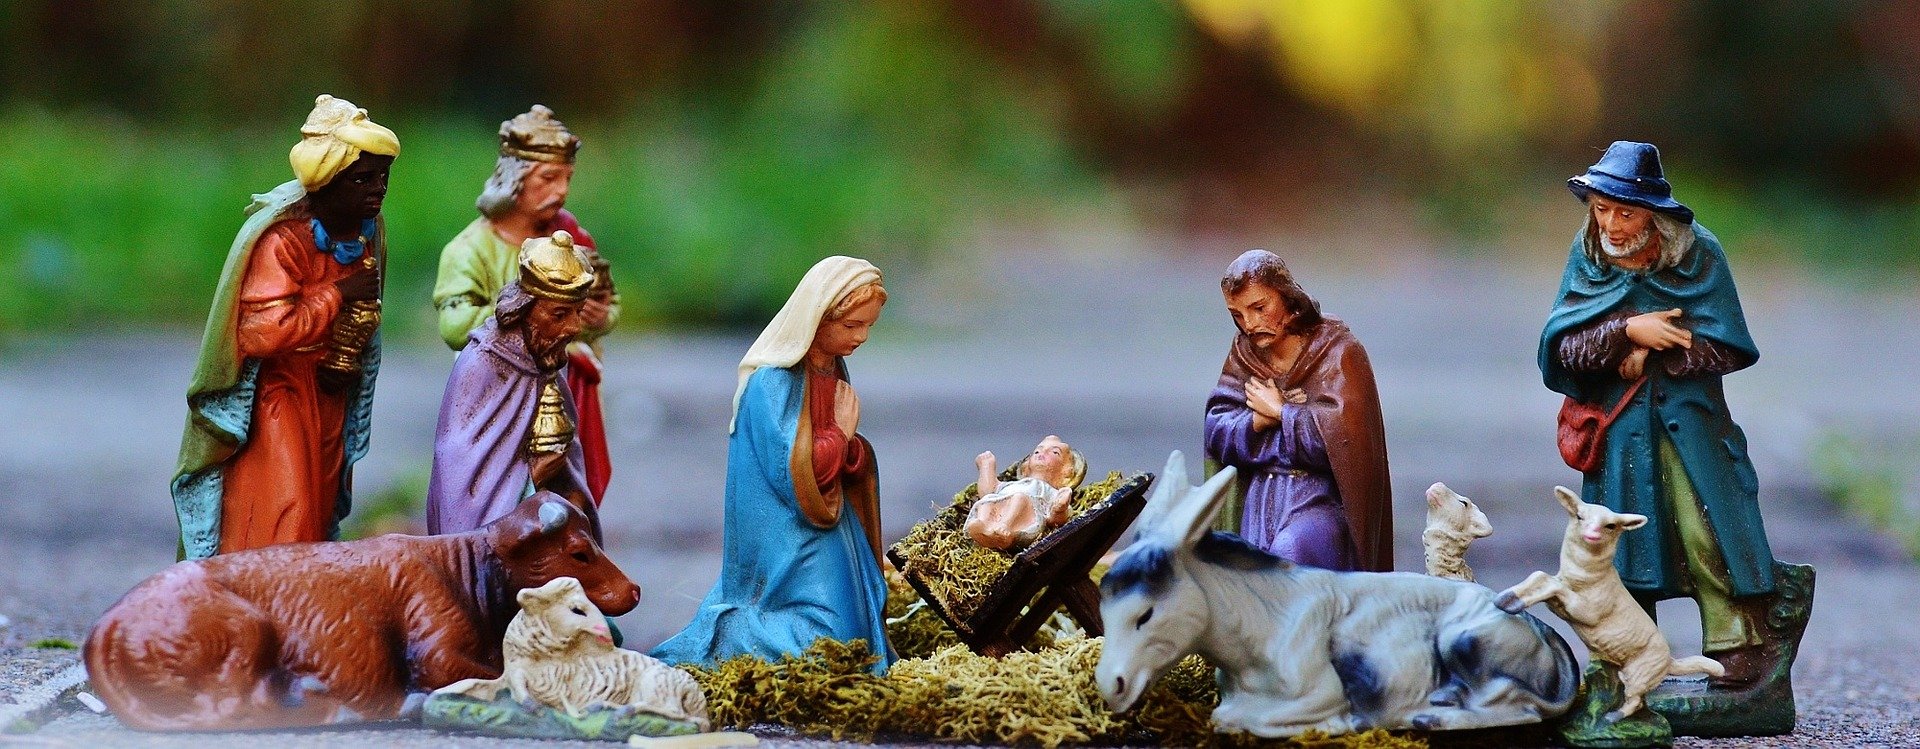 christmas-crib-figures-1060026_1920.jpg